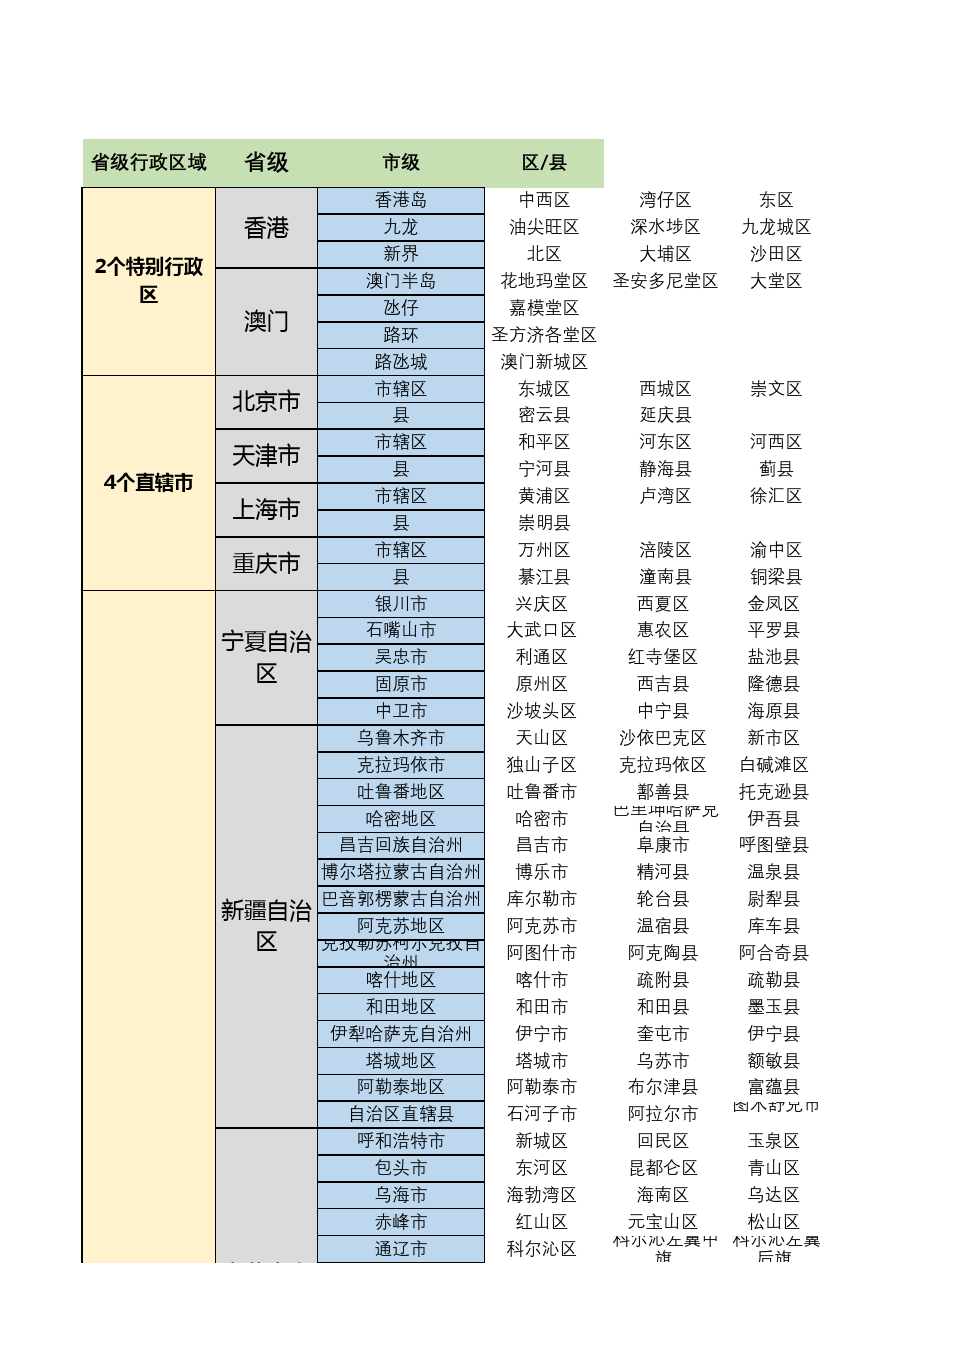 中国34个省级区域划分省市区列表表格(个人整理2020.10.13)